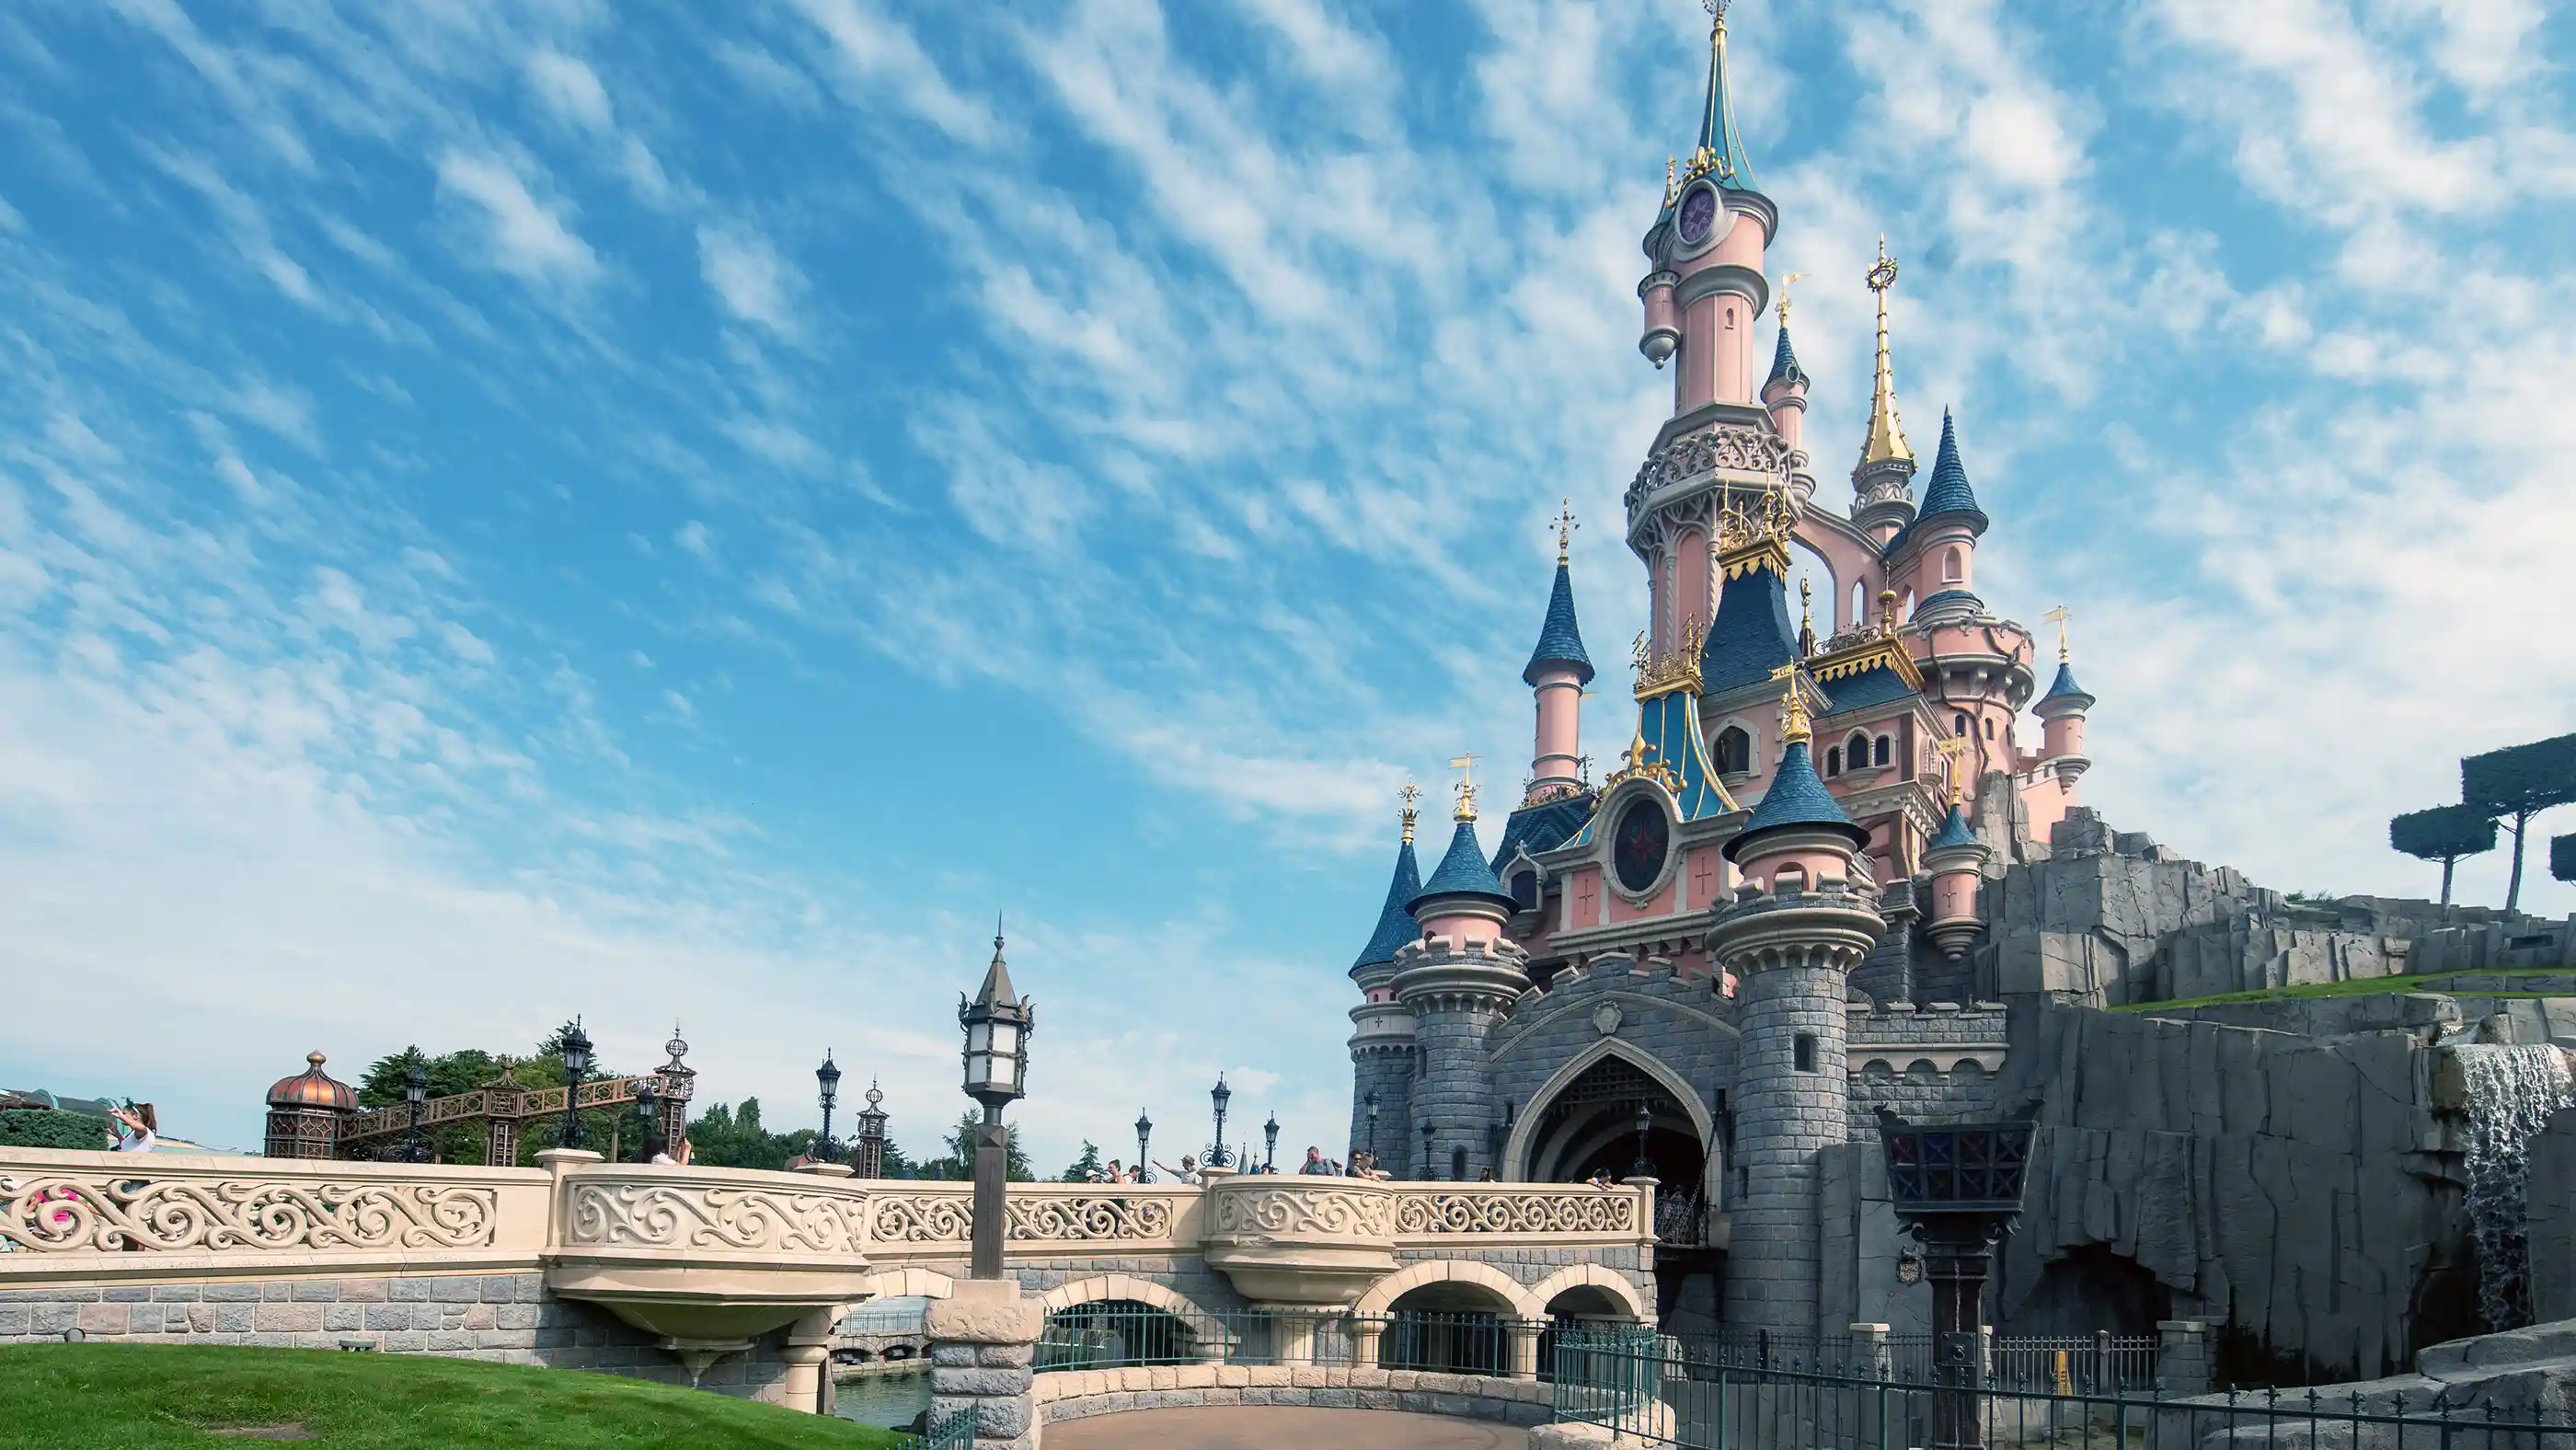 Disneyland Castle in Paris